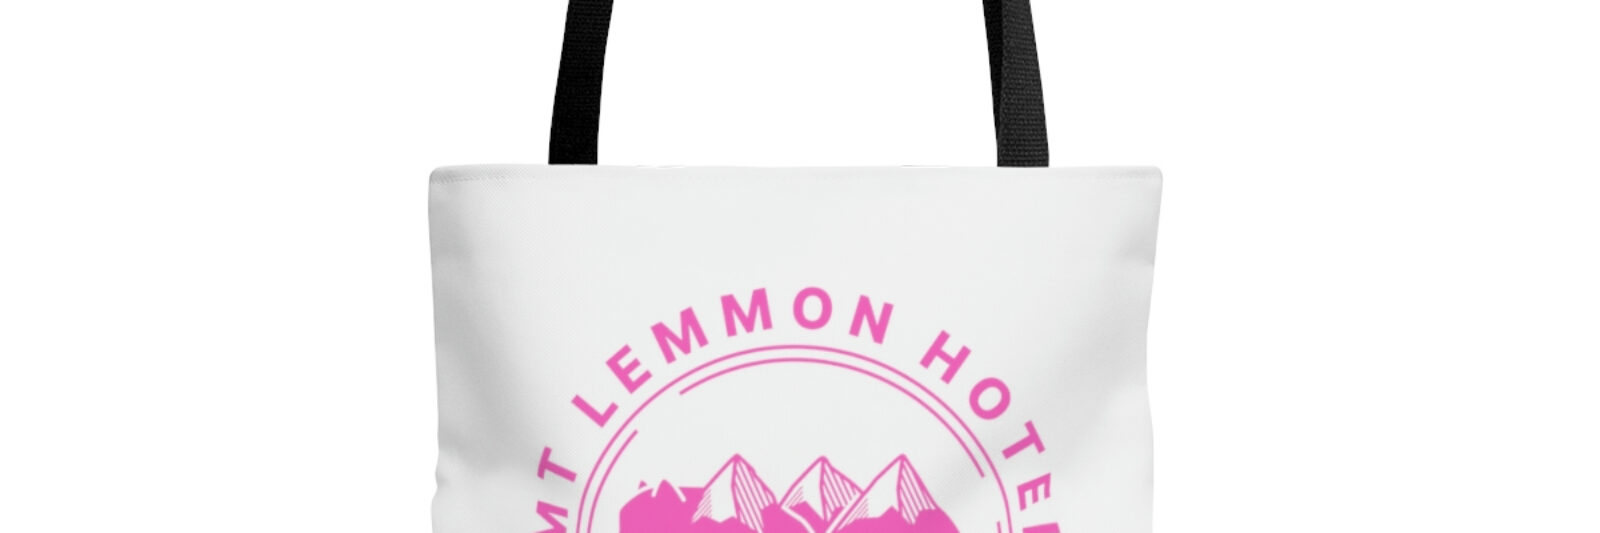 Mt Lemmon Hotel AOP Tote Bag pink logo image